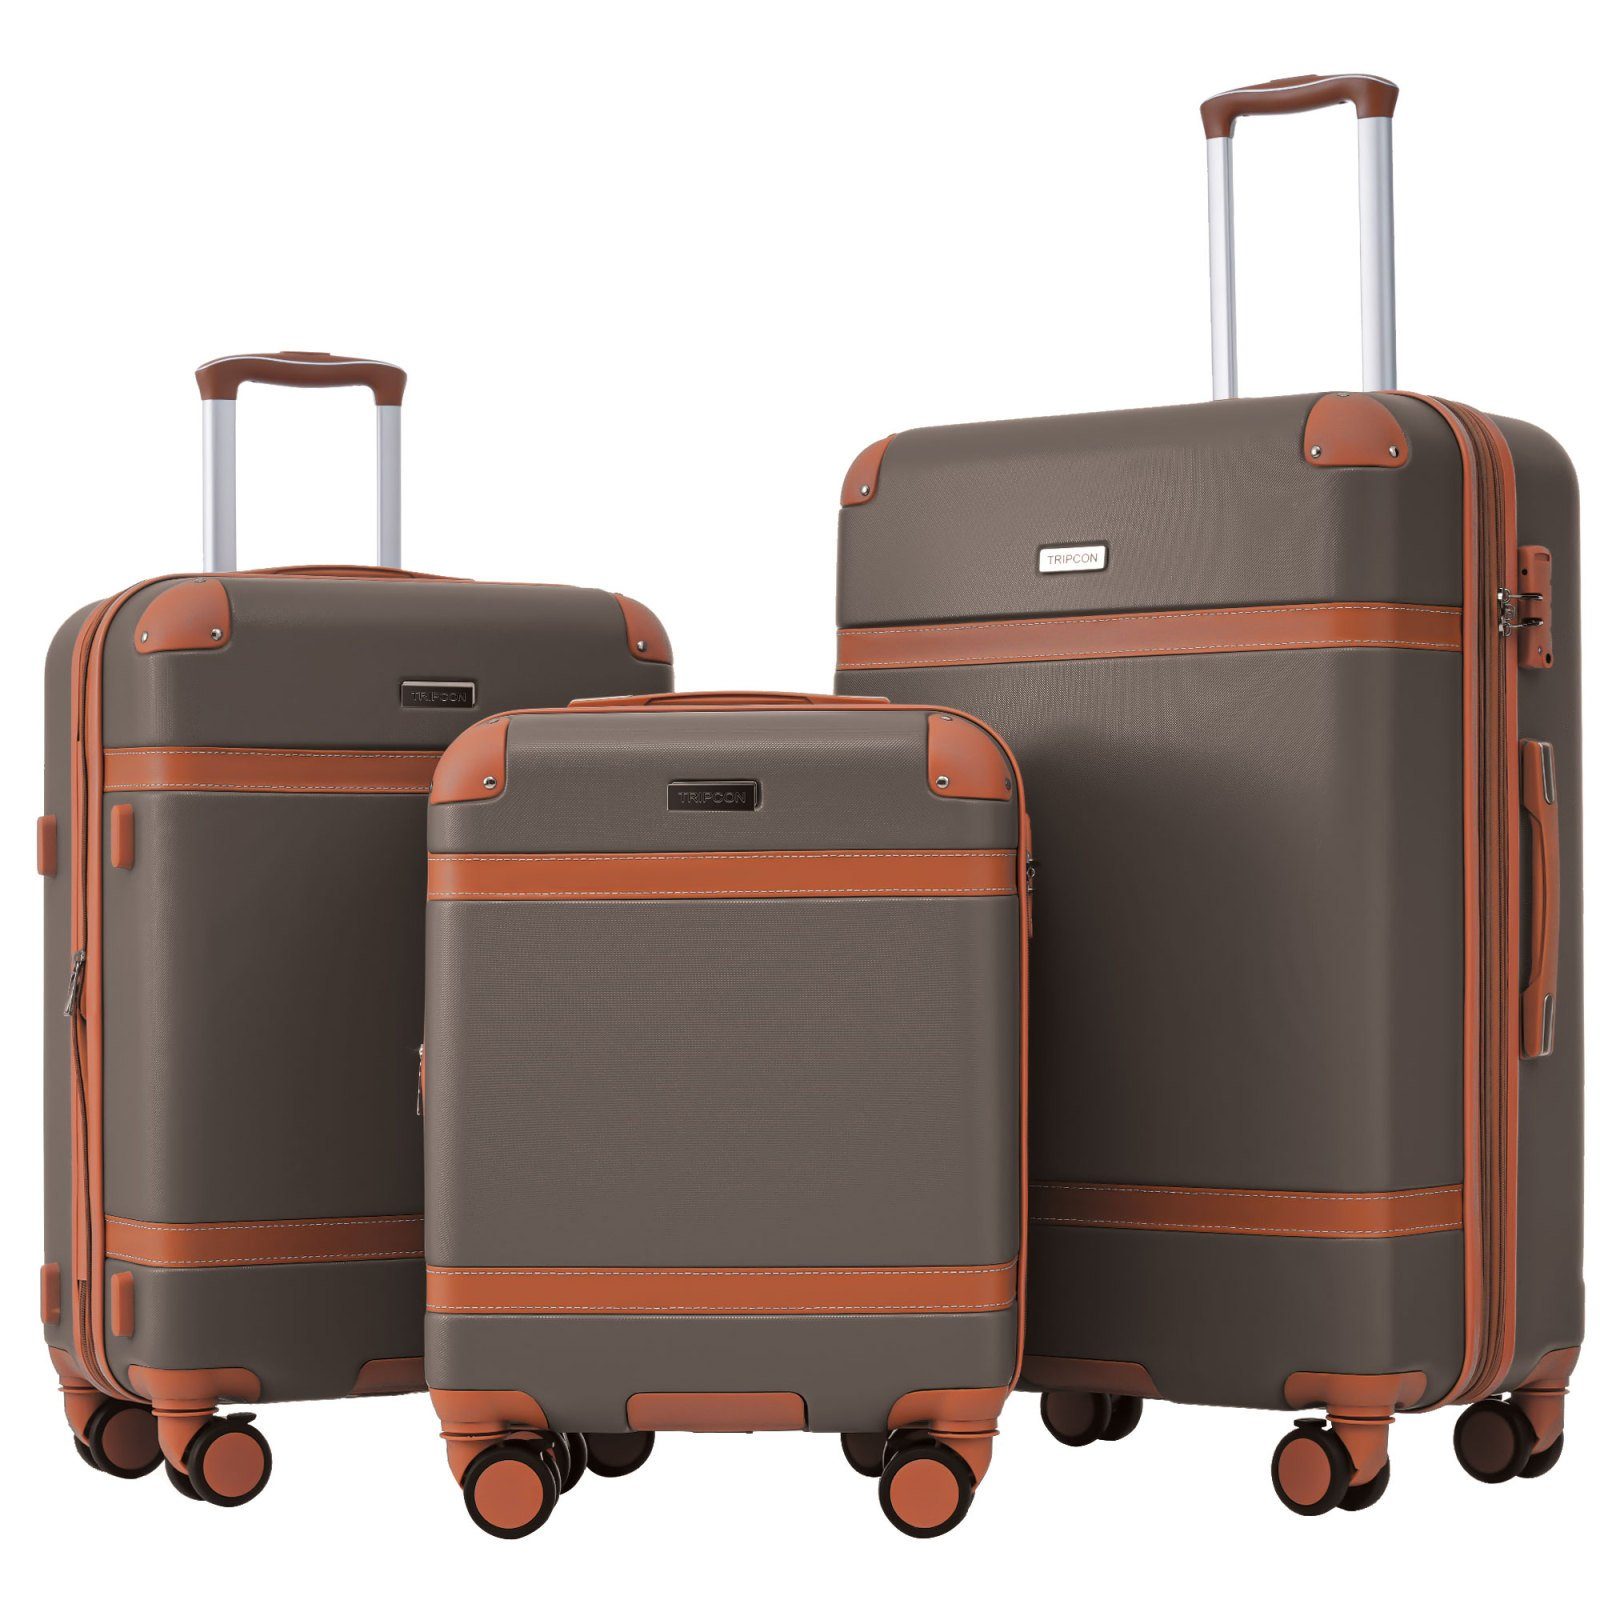 SEEZSSA Kofferset Kofferset 3-in-1-Kofferset Handgepäck 4 Rollen, Trolleyset,Kofferset aus ABS-Material braun